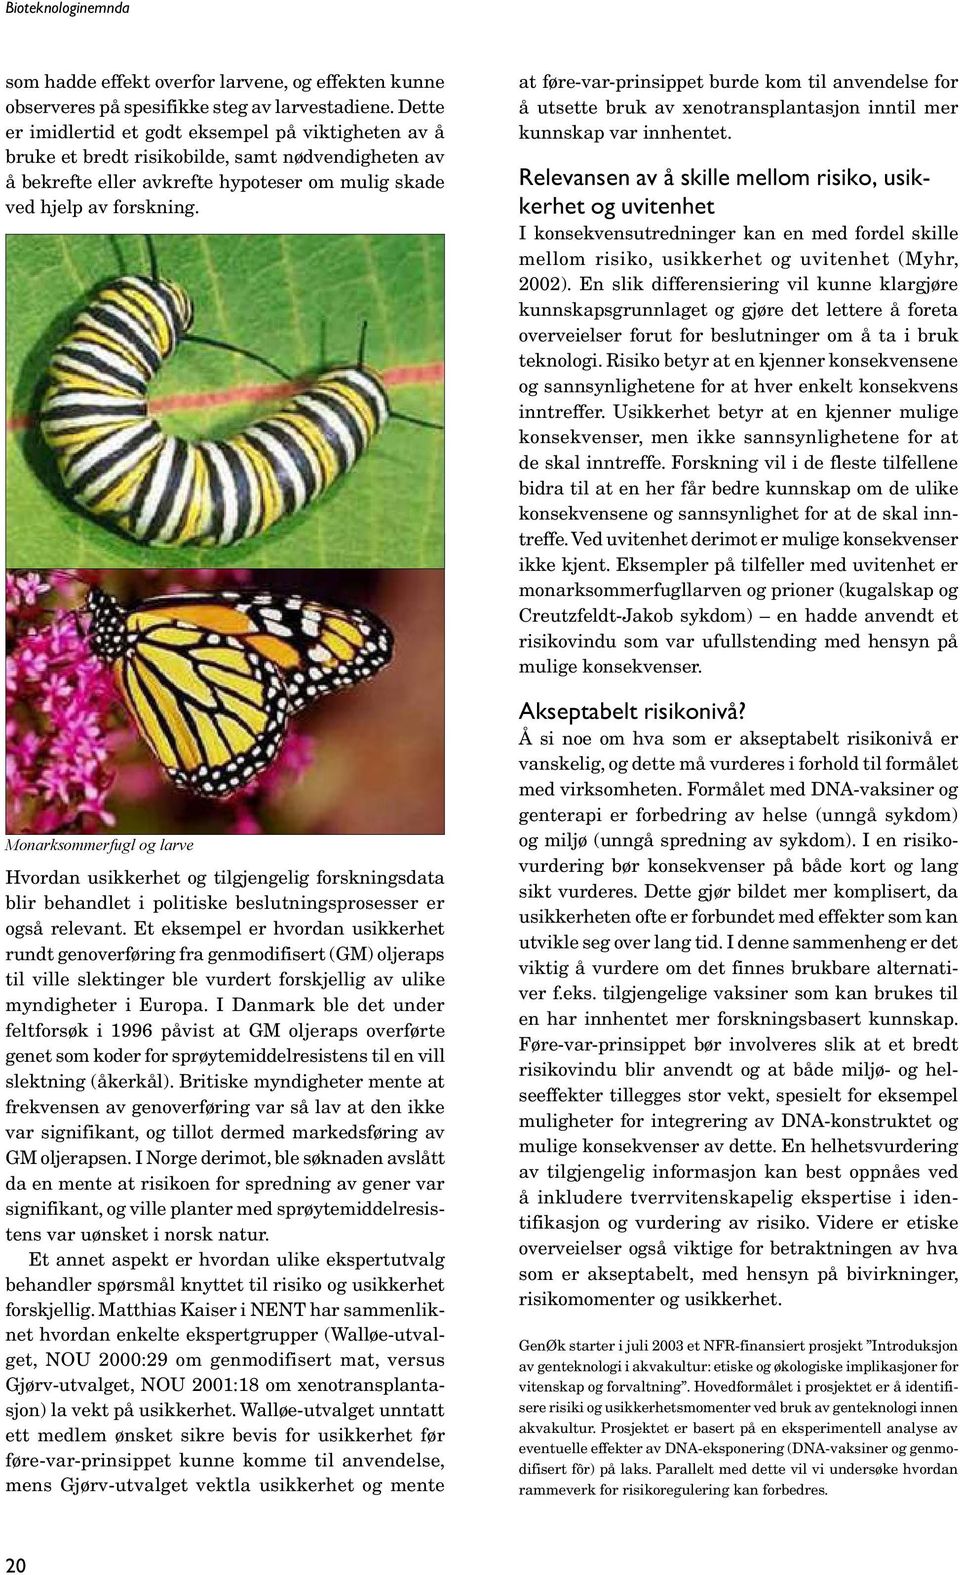 Monarksommerfugl og larve Hvordan usikkerhet og tilgjengelig forskningsdata blir behandlet i politiske beslutningsprosesser er også relevant.